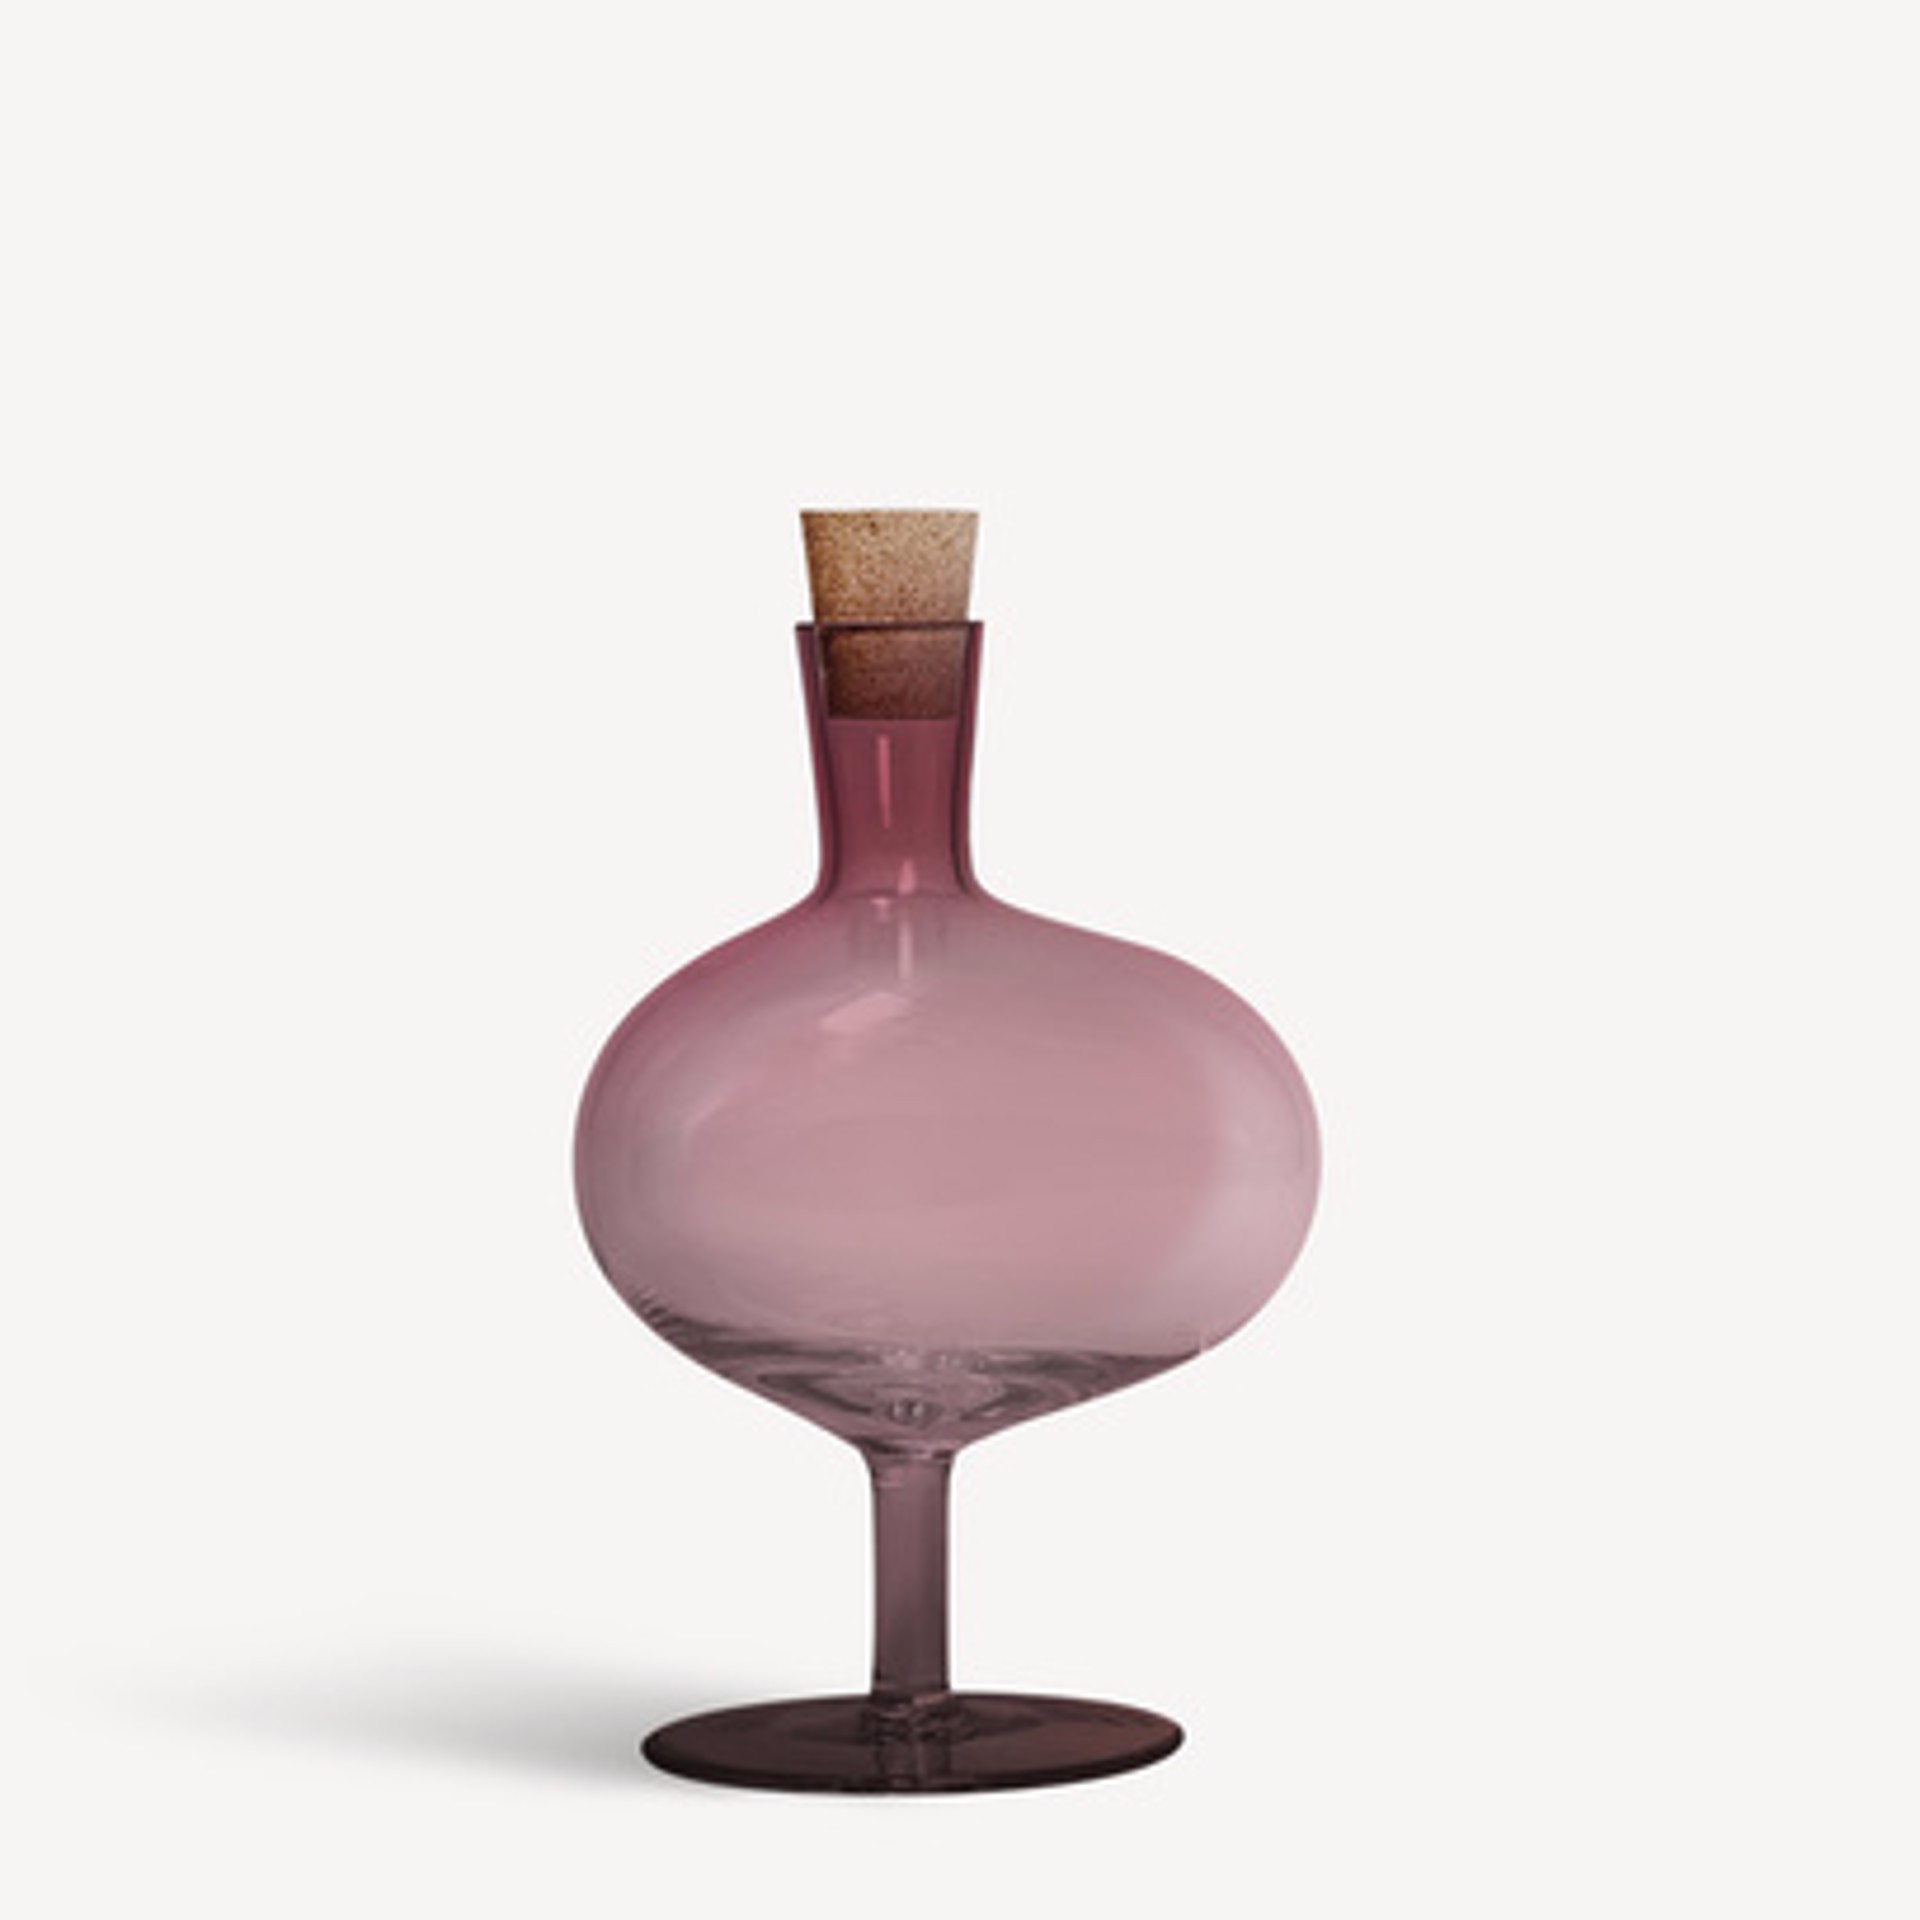 Kosta Boda- Bod Bottle- Burgundy- Medium by GVL CMKT